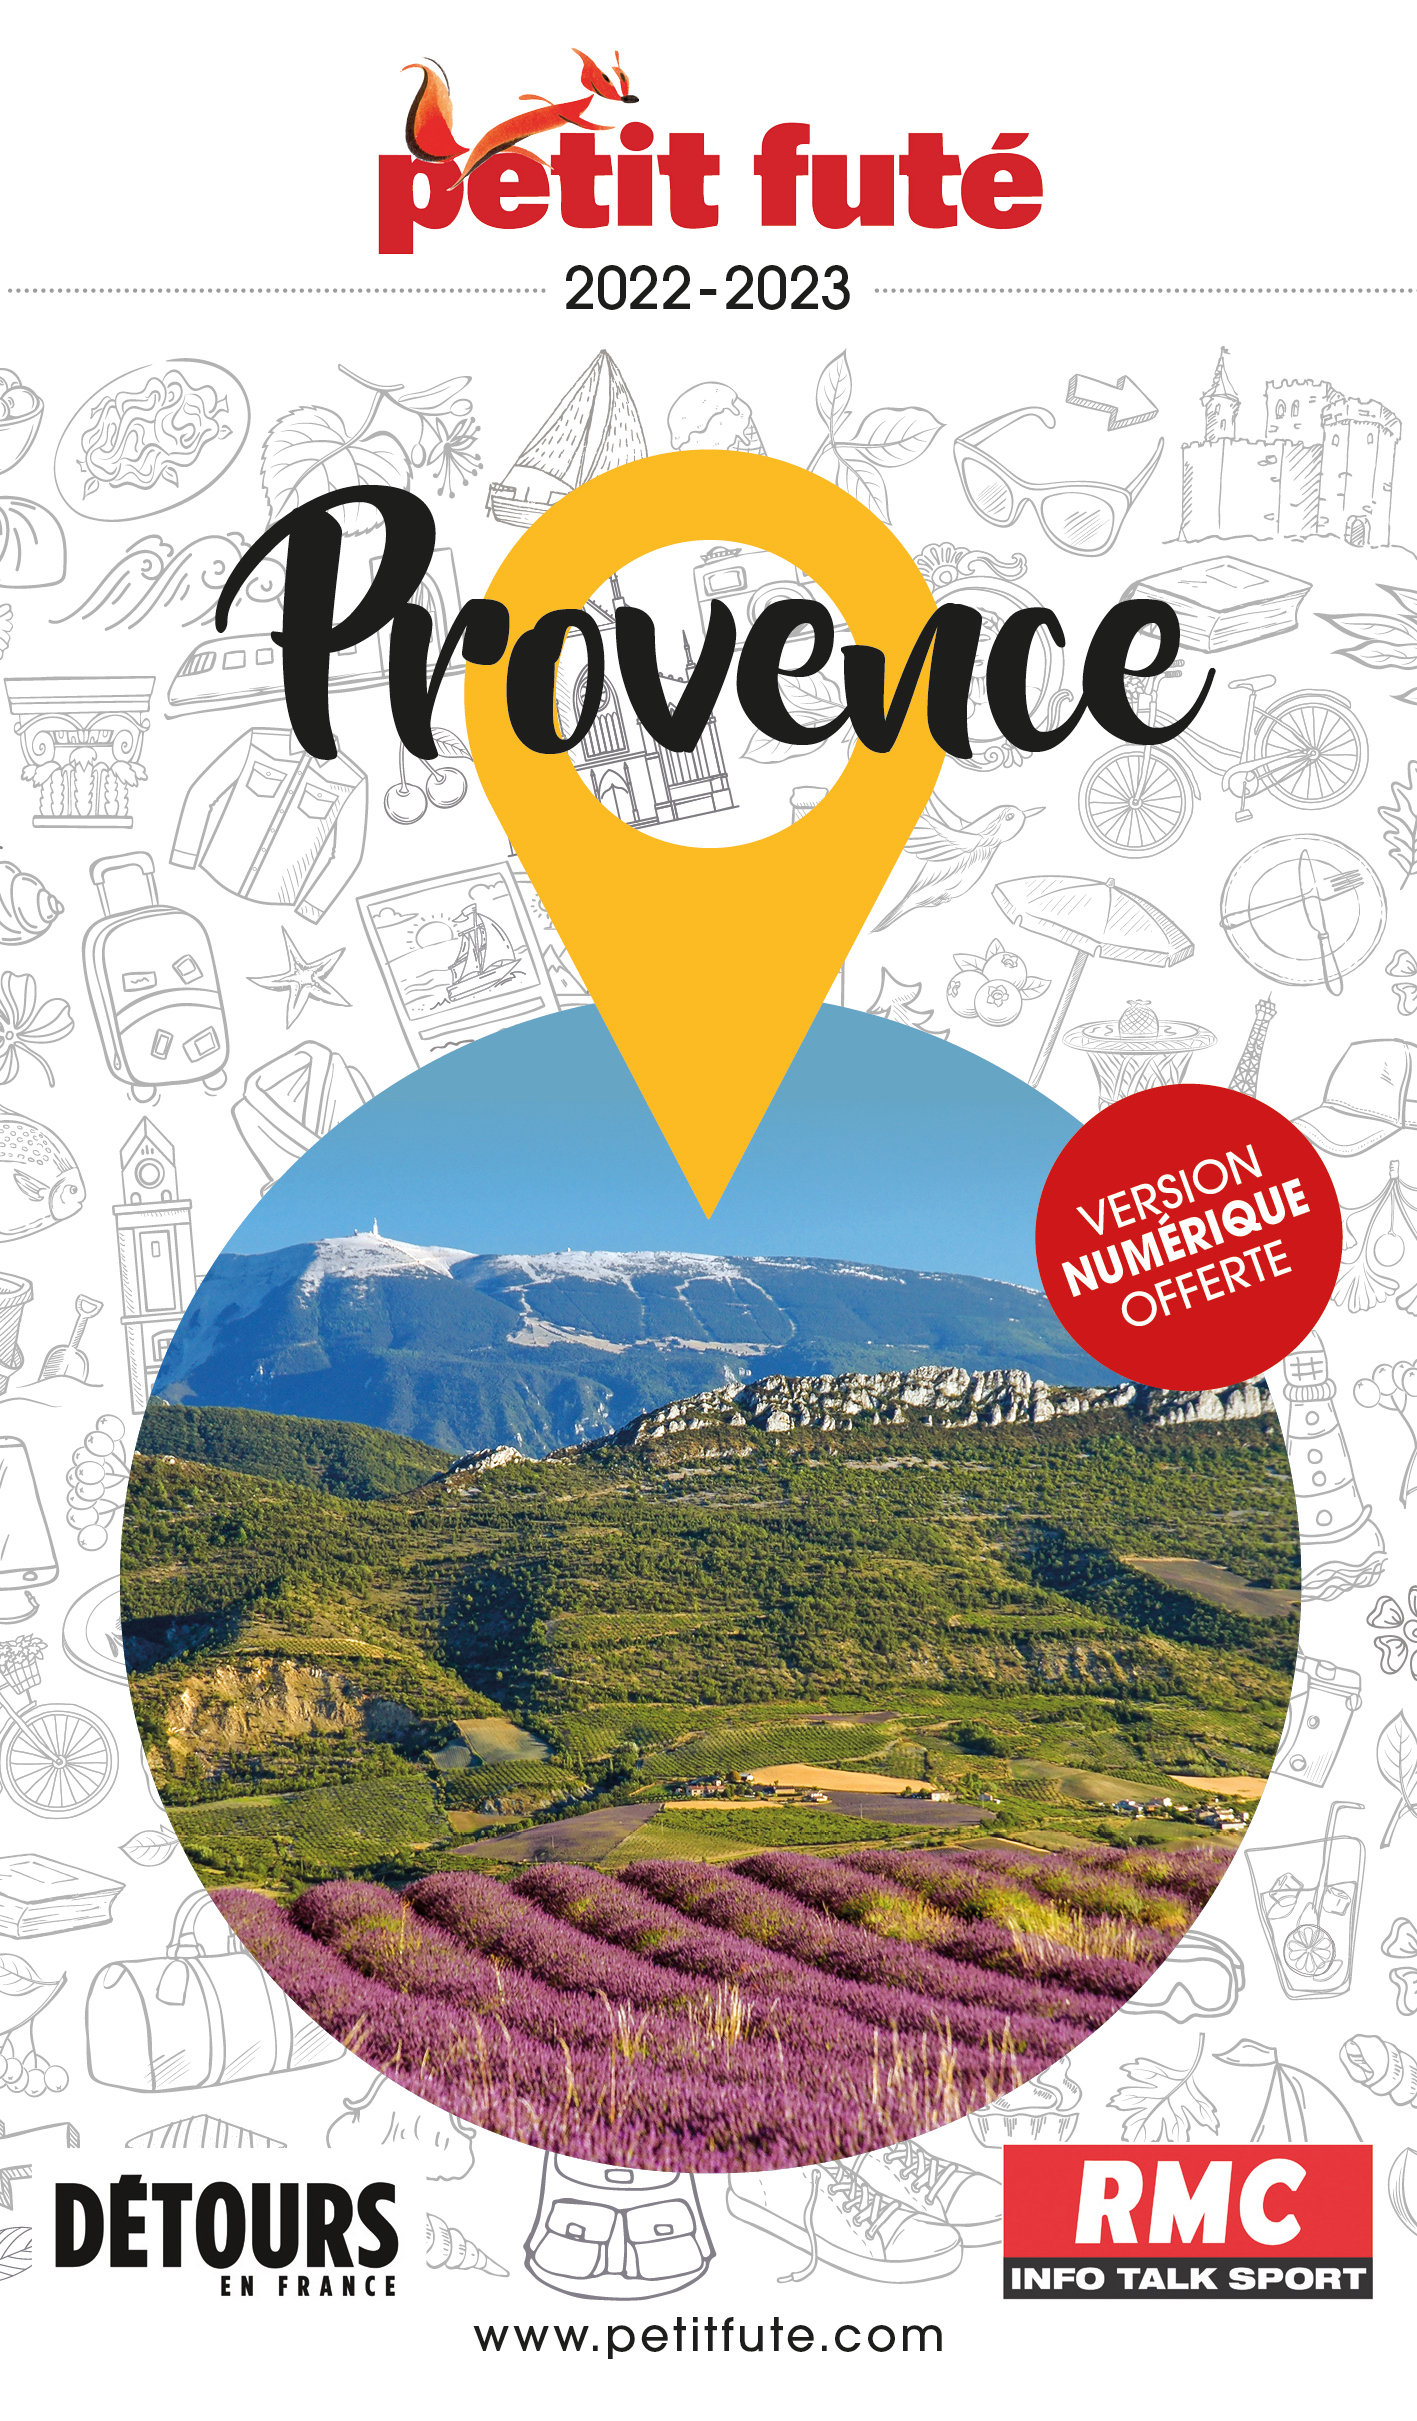 Cap sur la Provence avec le Petit Futé.